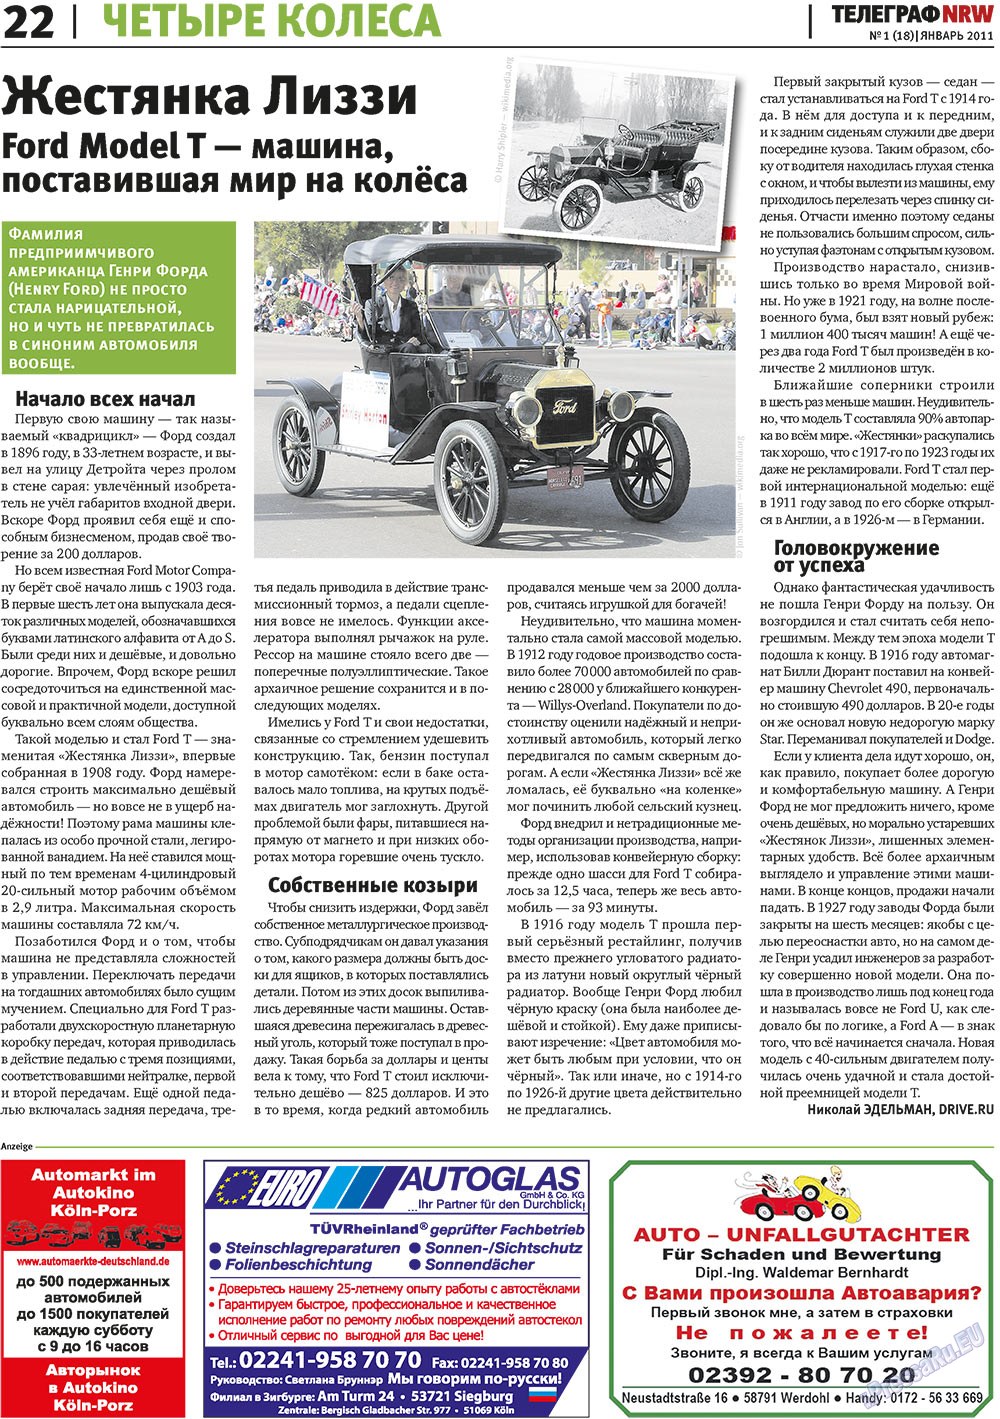 Телеграф NRW (газета). 2011 год, номер 1, стр. 22